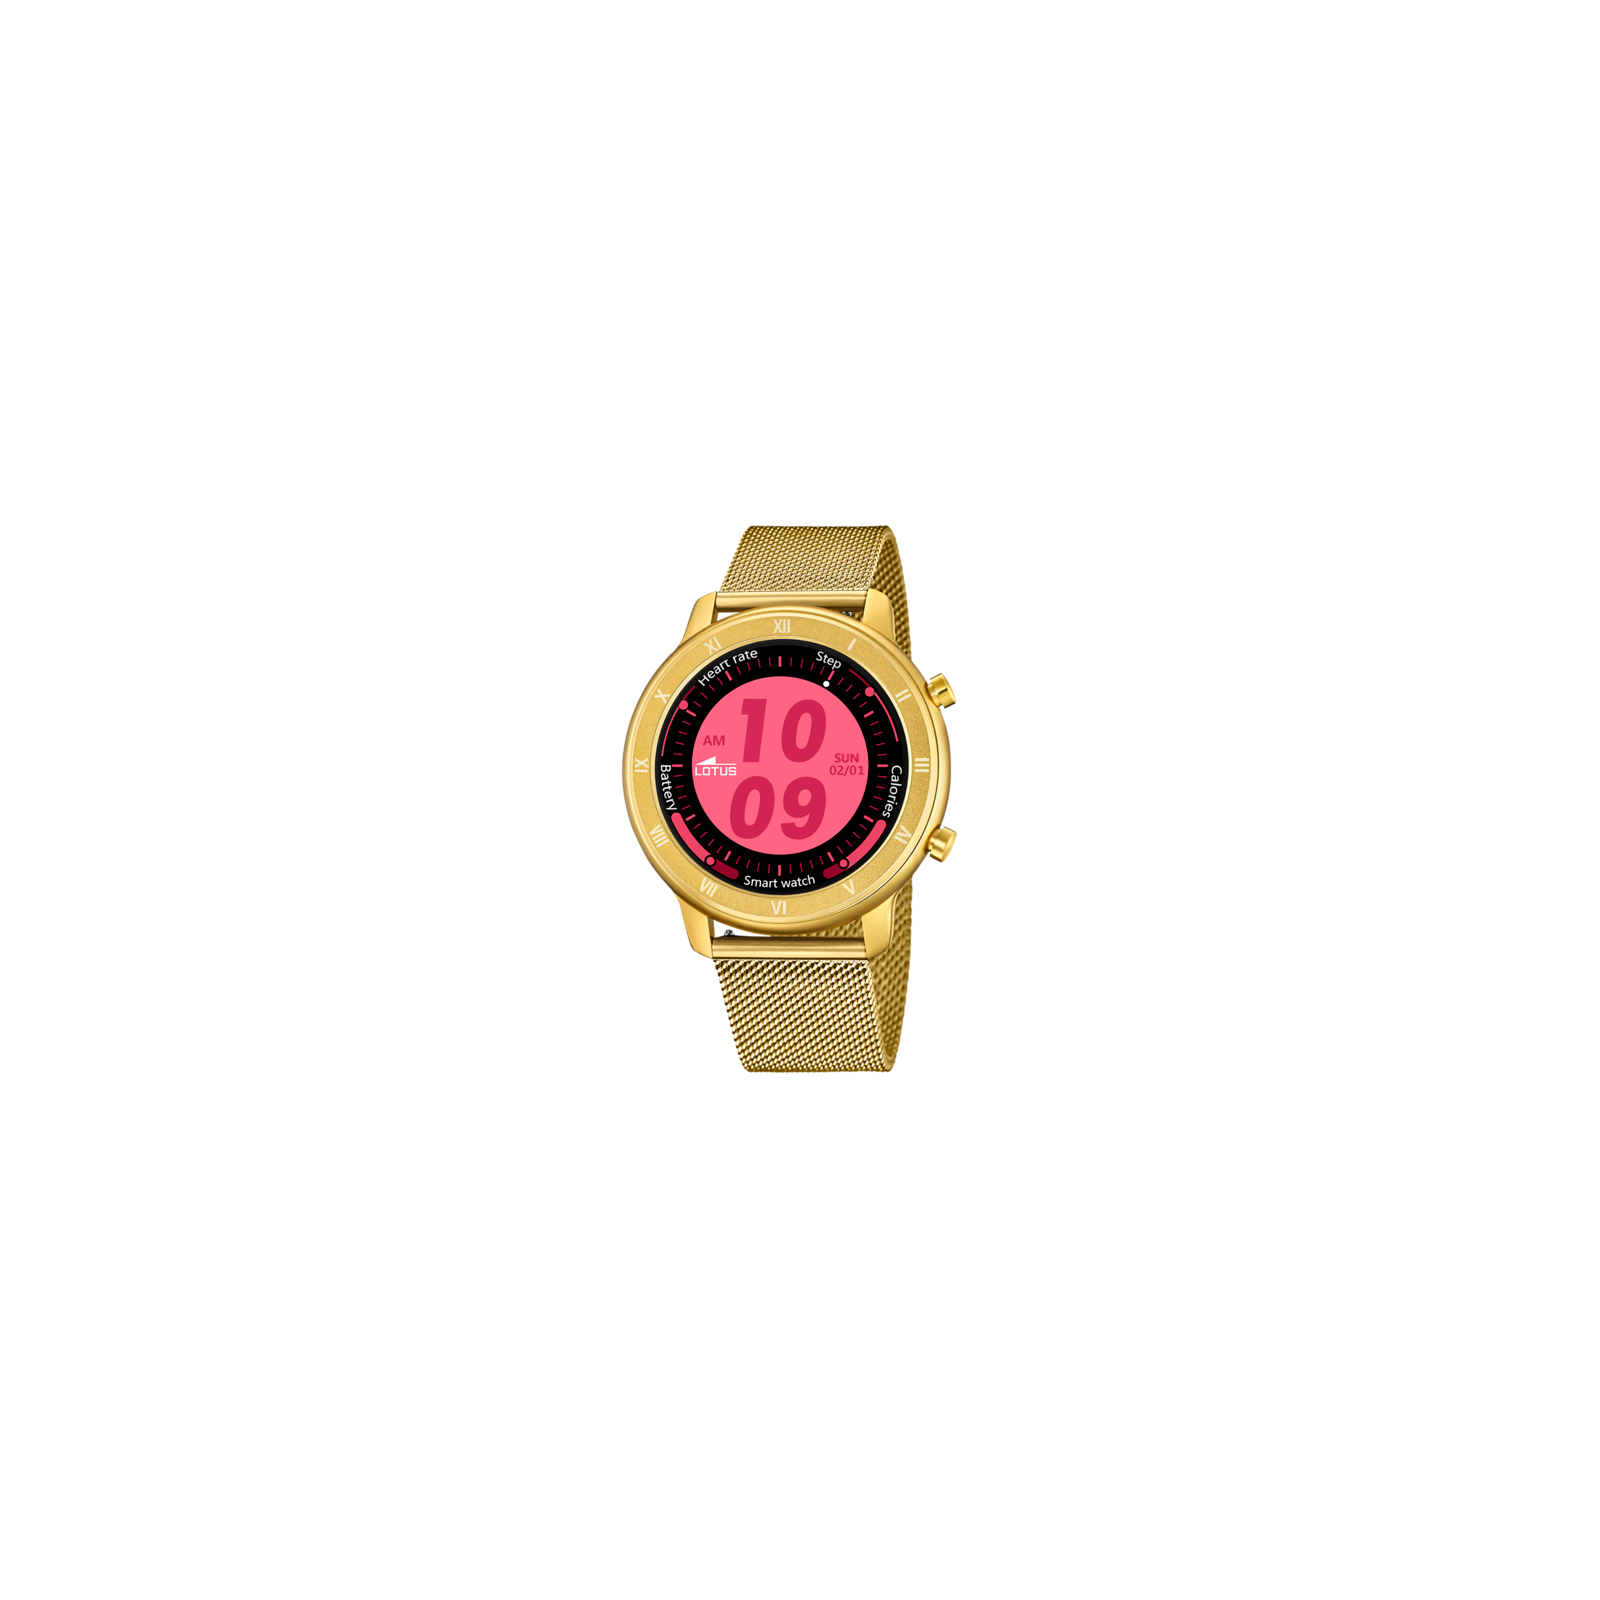  Lotus Reloj Smartwatch 50035/1 Smartime Mujer, Moderno